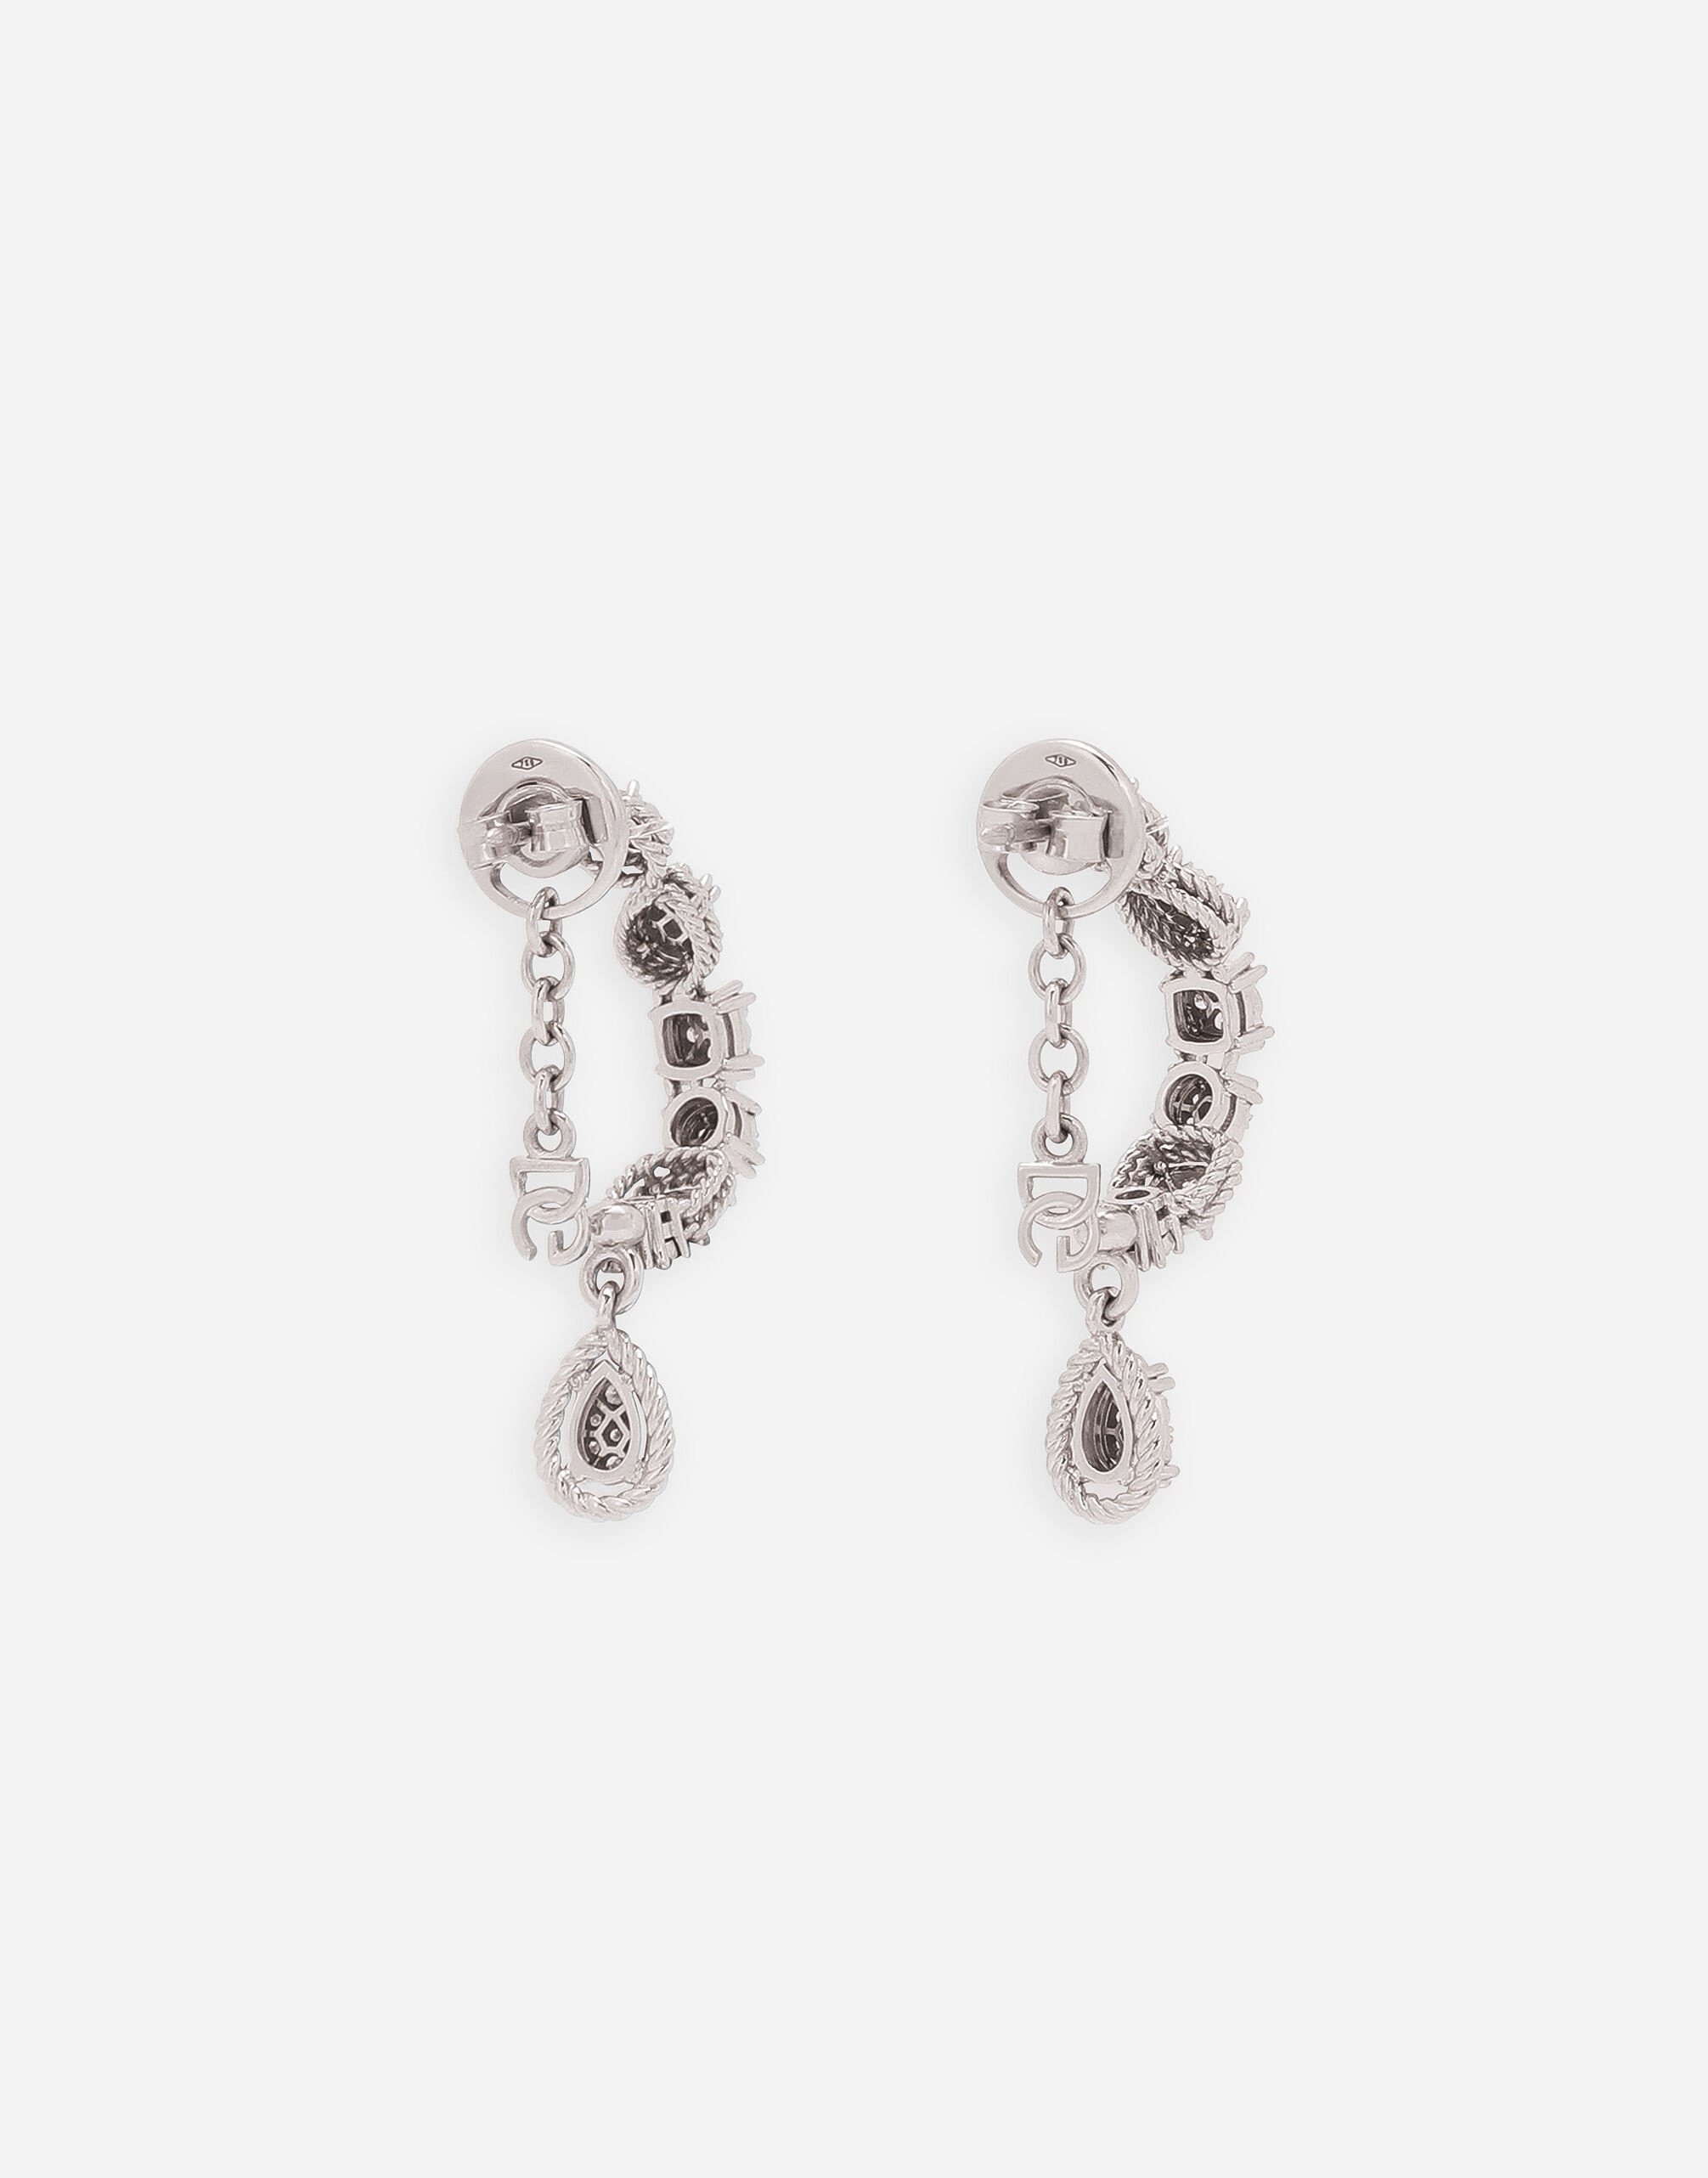 Easy Diamond earrings in white gold 18kt and diamonds pavé - 5